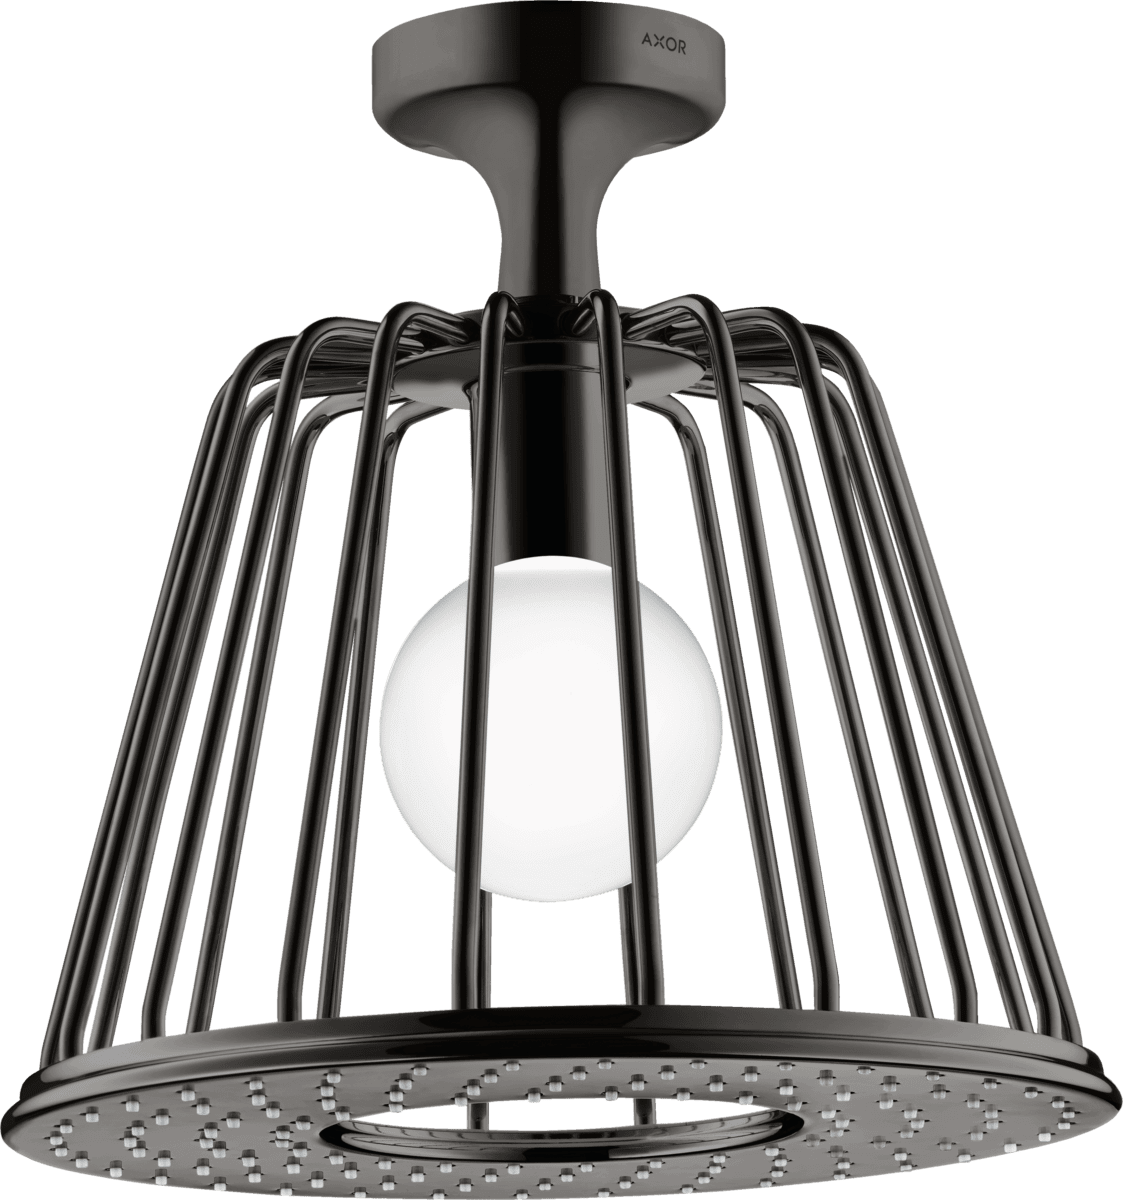 Obrázek HANSGROHE AXOR LampShower/Nendo LampShower 275 1jet s připojením ke stropu #26032330 - Leštěný černý chrom